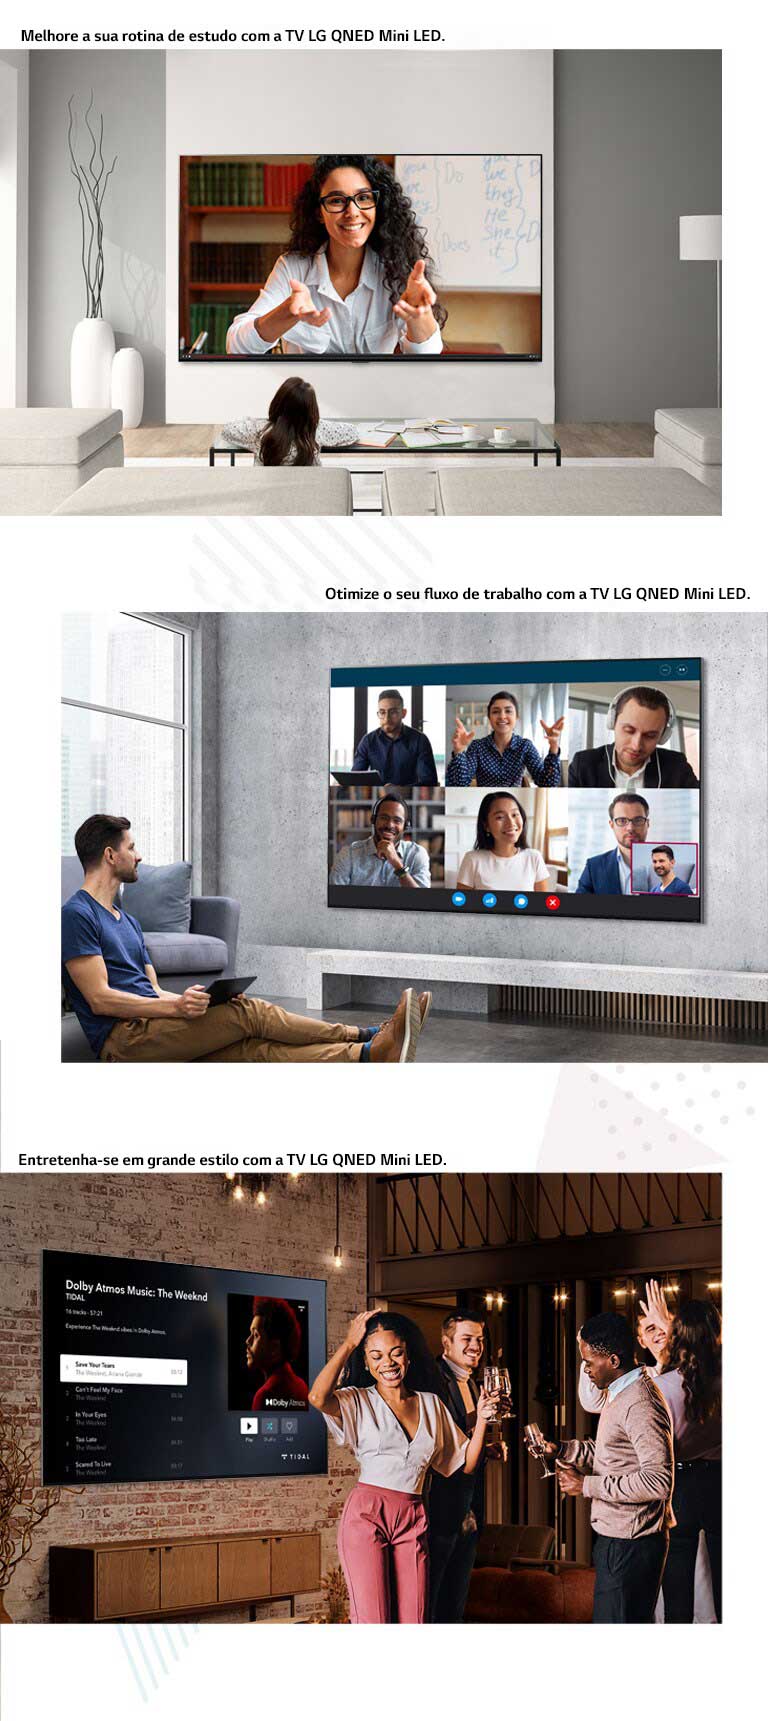 Três imagens da TV LG QNED MIniLED a serem utilizadas em diferentes situações. De cima para baixo: em sessão de estudo online, uma reunião virtual e uma festa em casa.